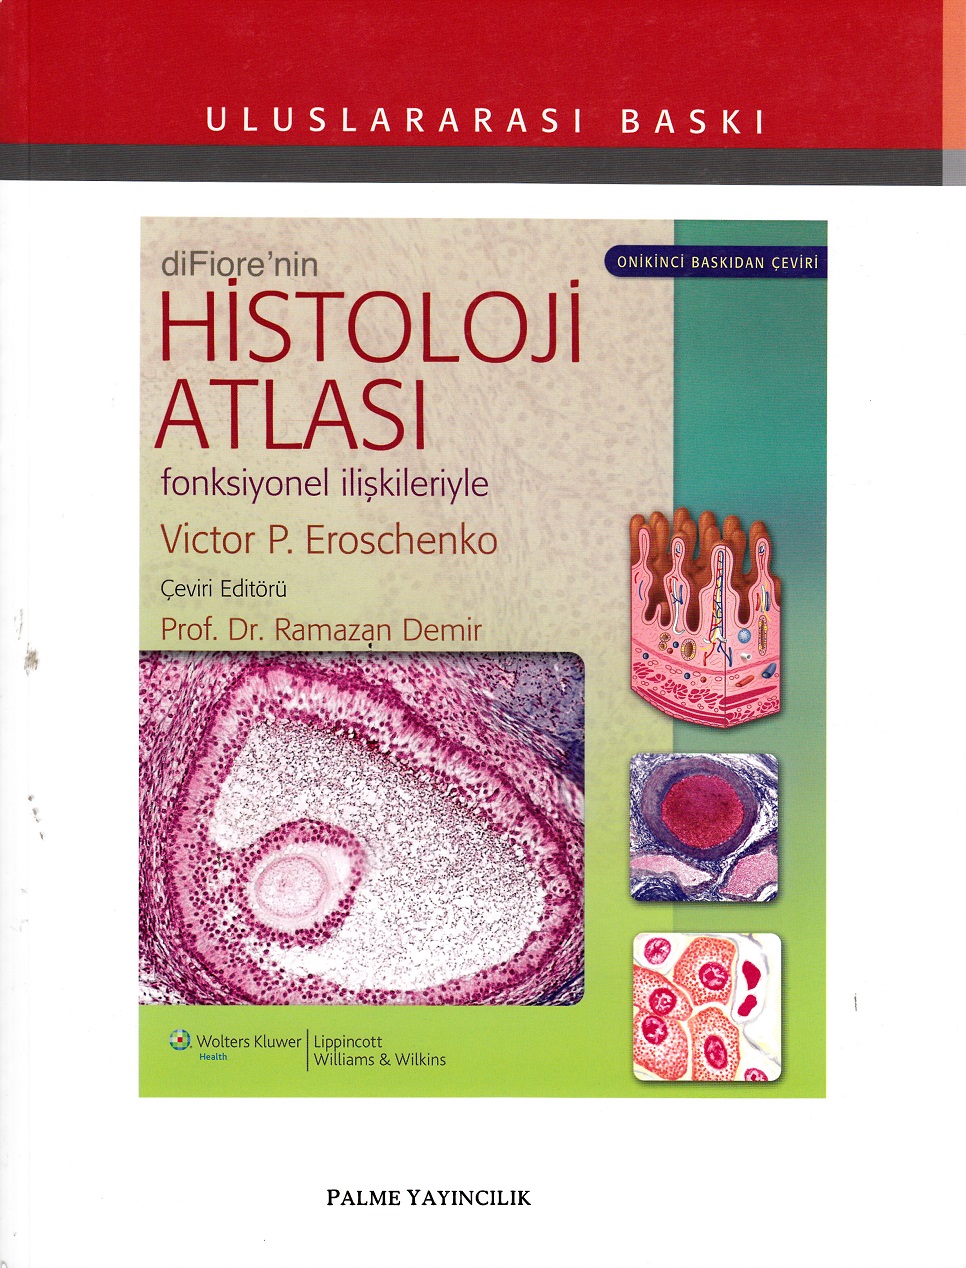 diFiore nin Histoloji Atlası